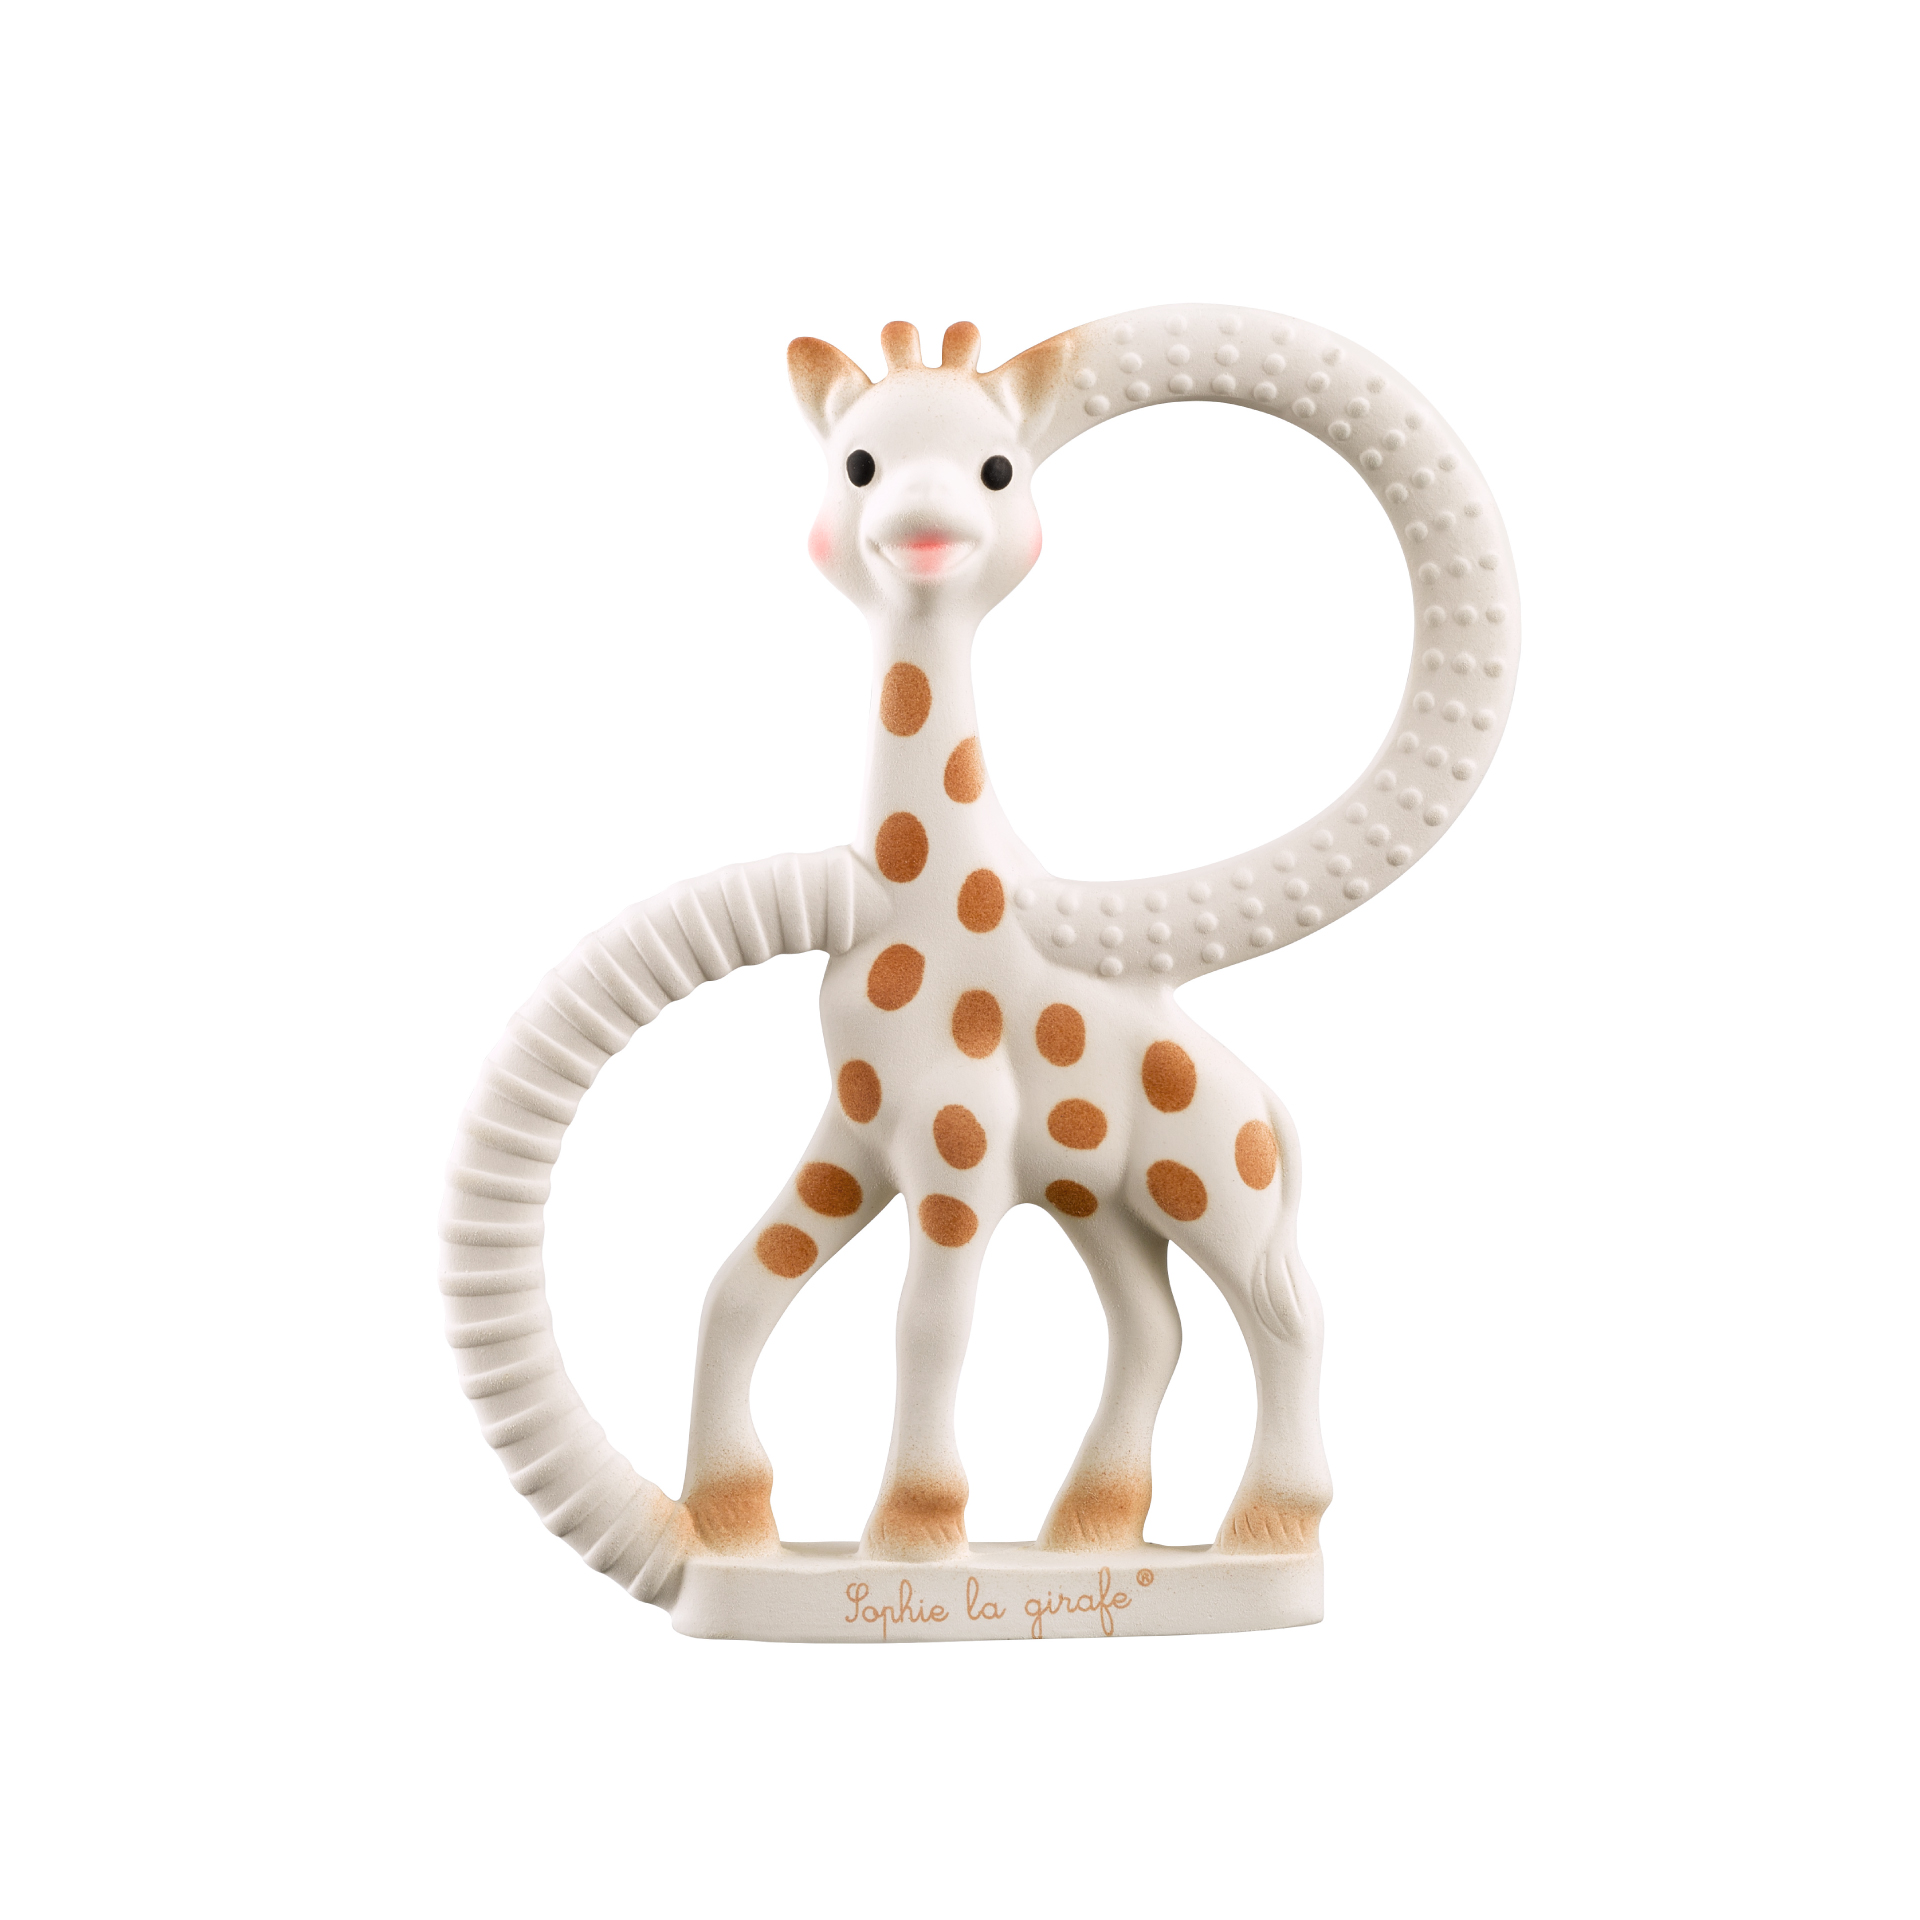 キリンのソフィー 日本公式サイト | Sophie la girafe Japan